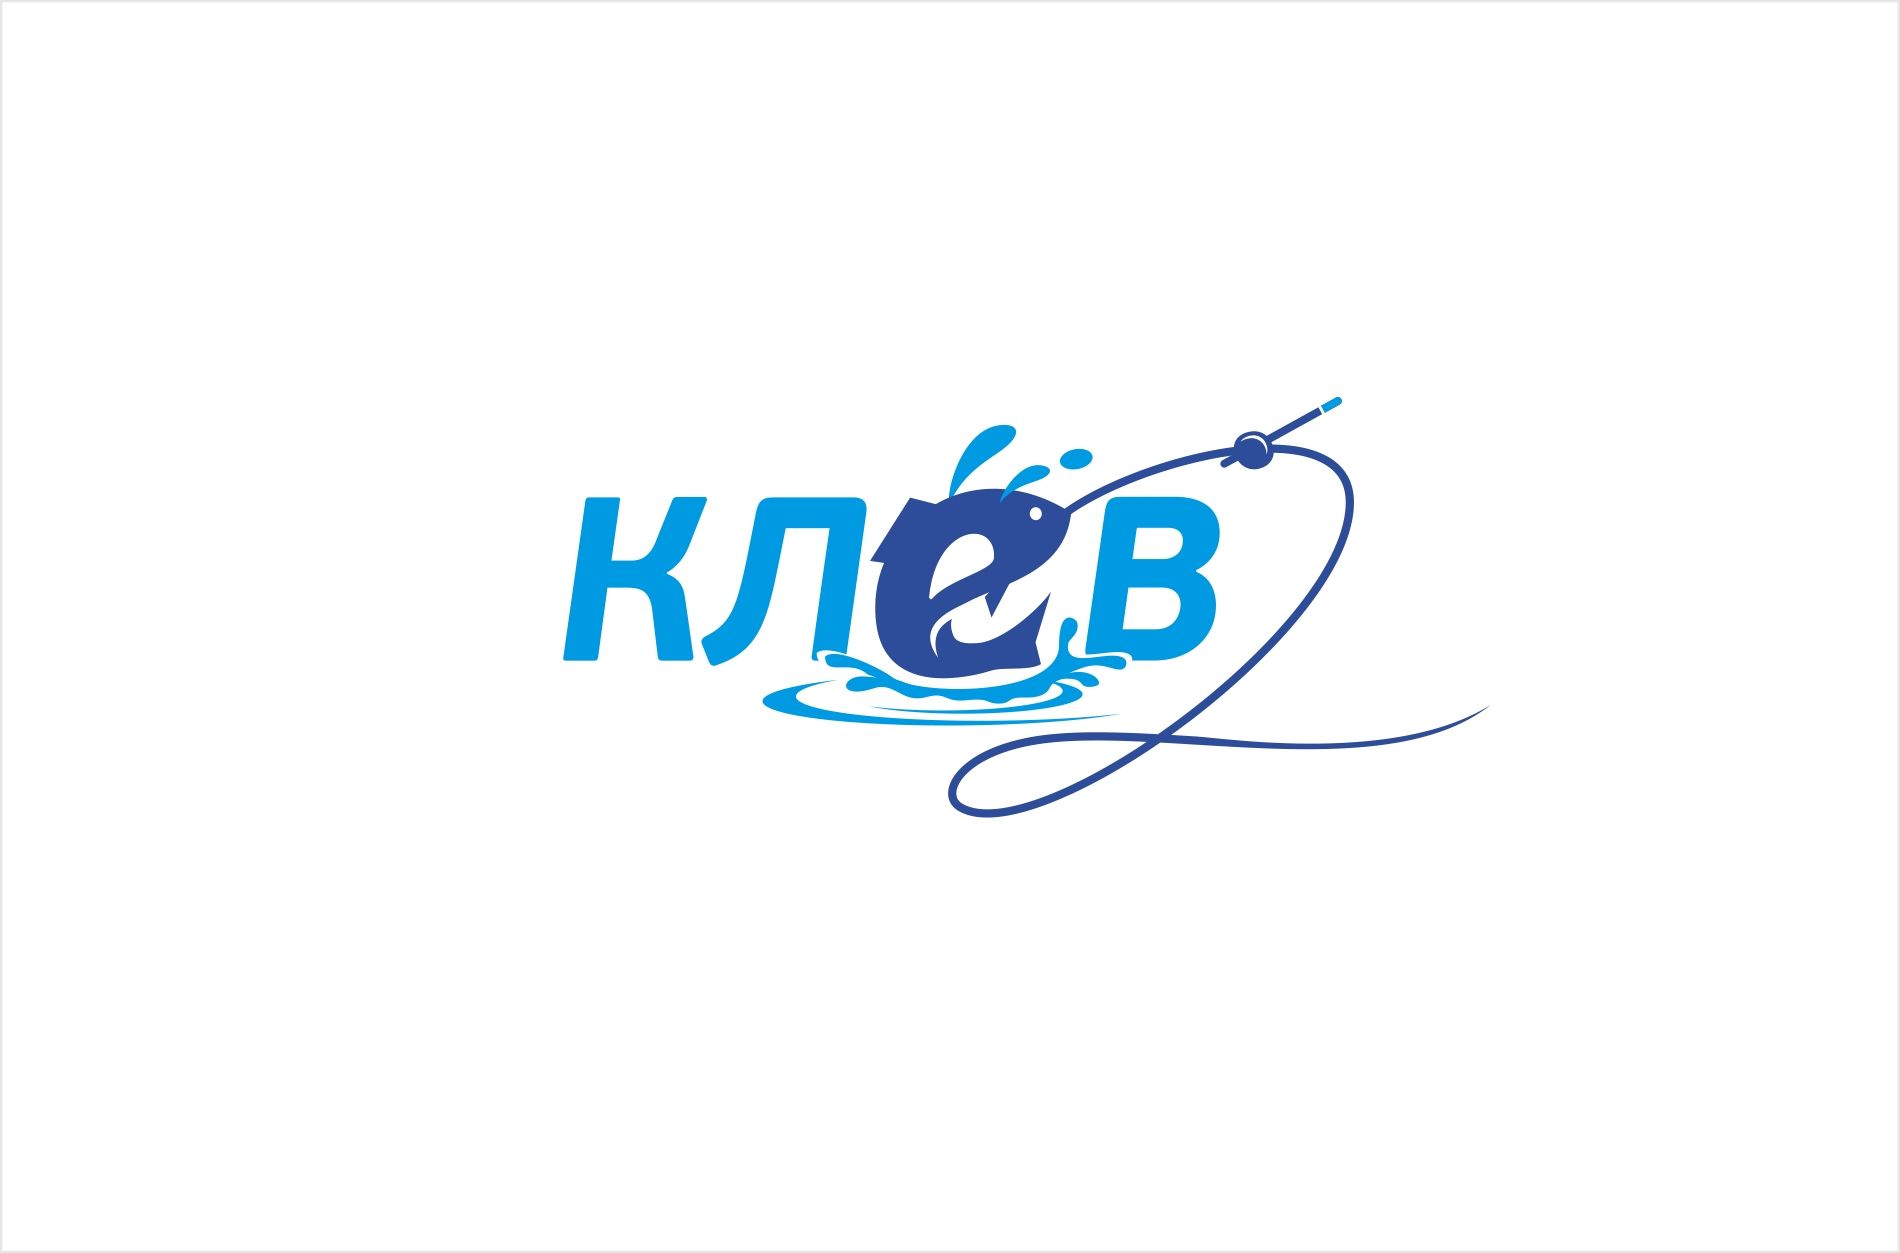 Логотип для рыболовного интернет магазина - дизайнер kras-sky